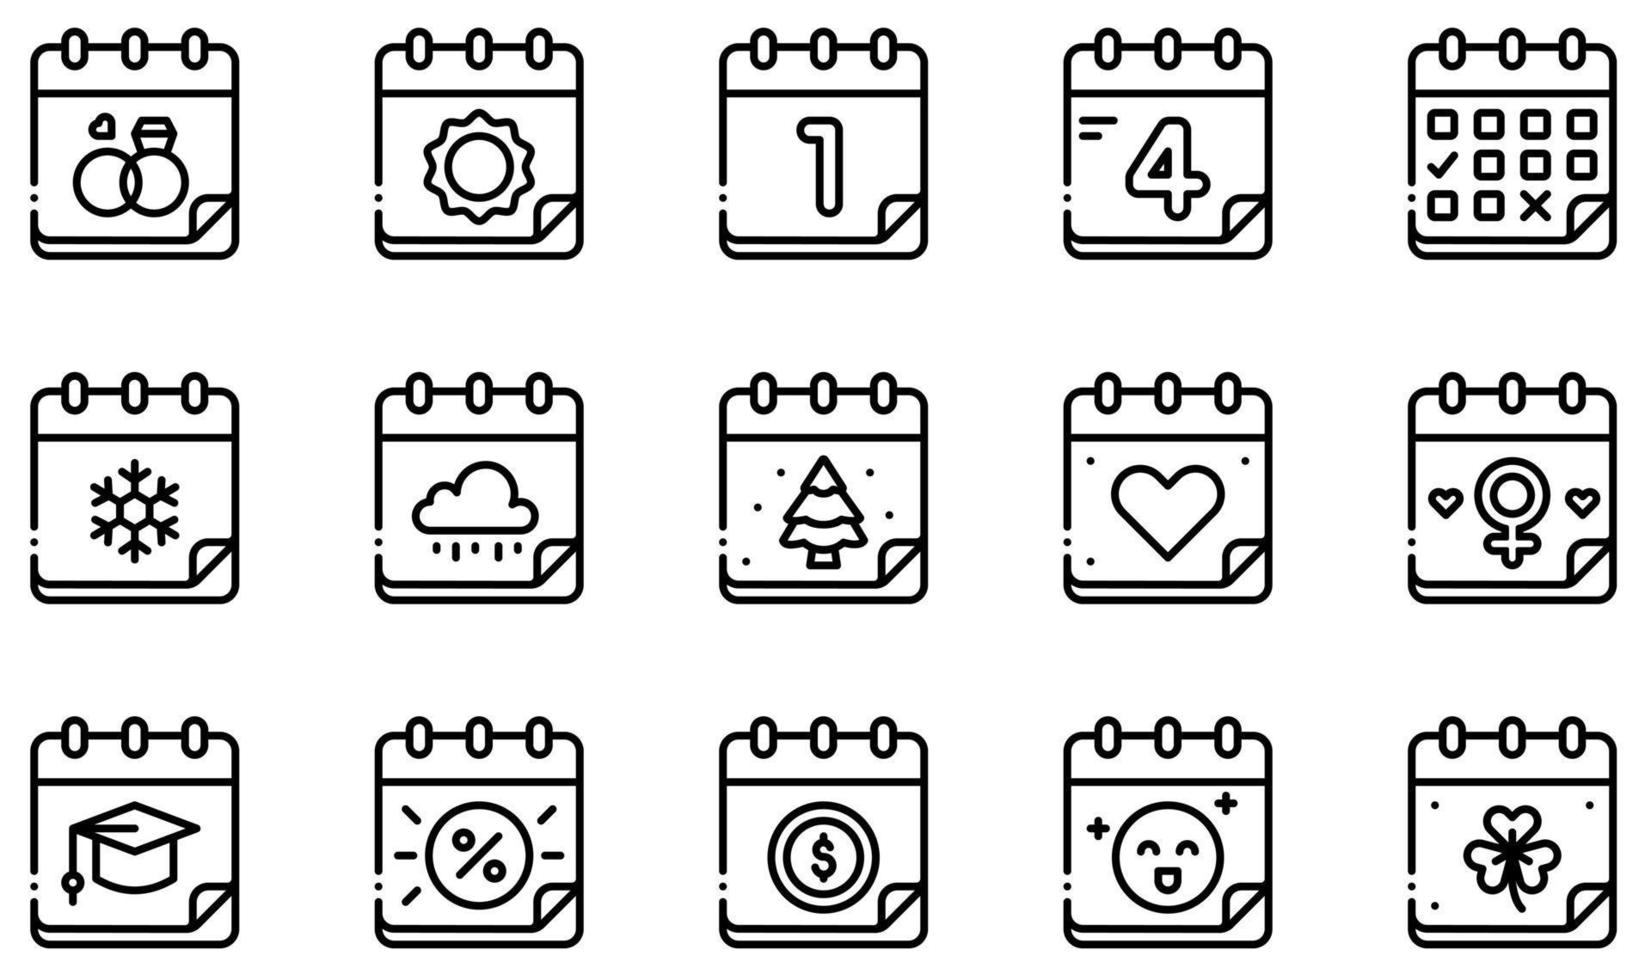 conjunto de iconos vectoriales relacionados con el calendario y las fechas. contiene íconos como calendario, día, hora, evento, horario, administración y más. vector